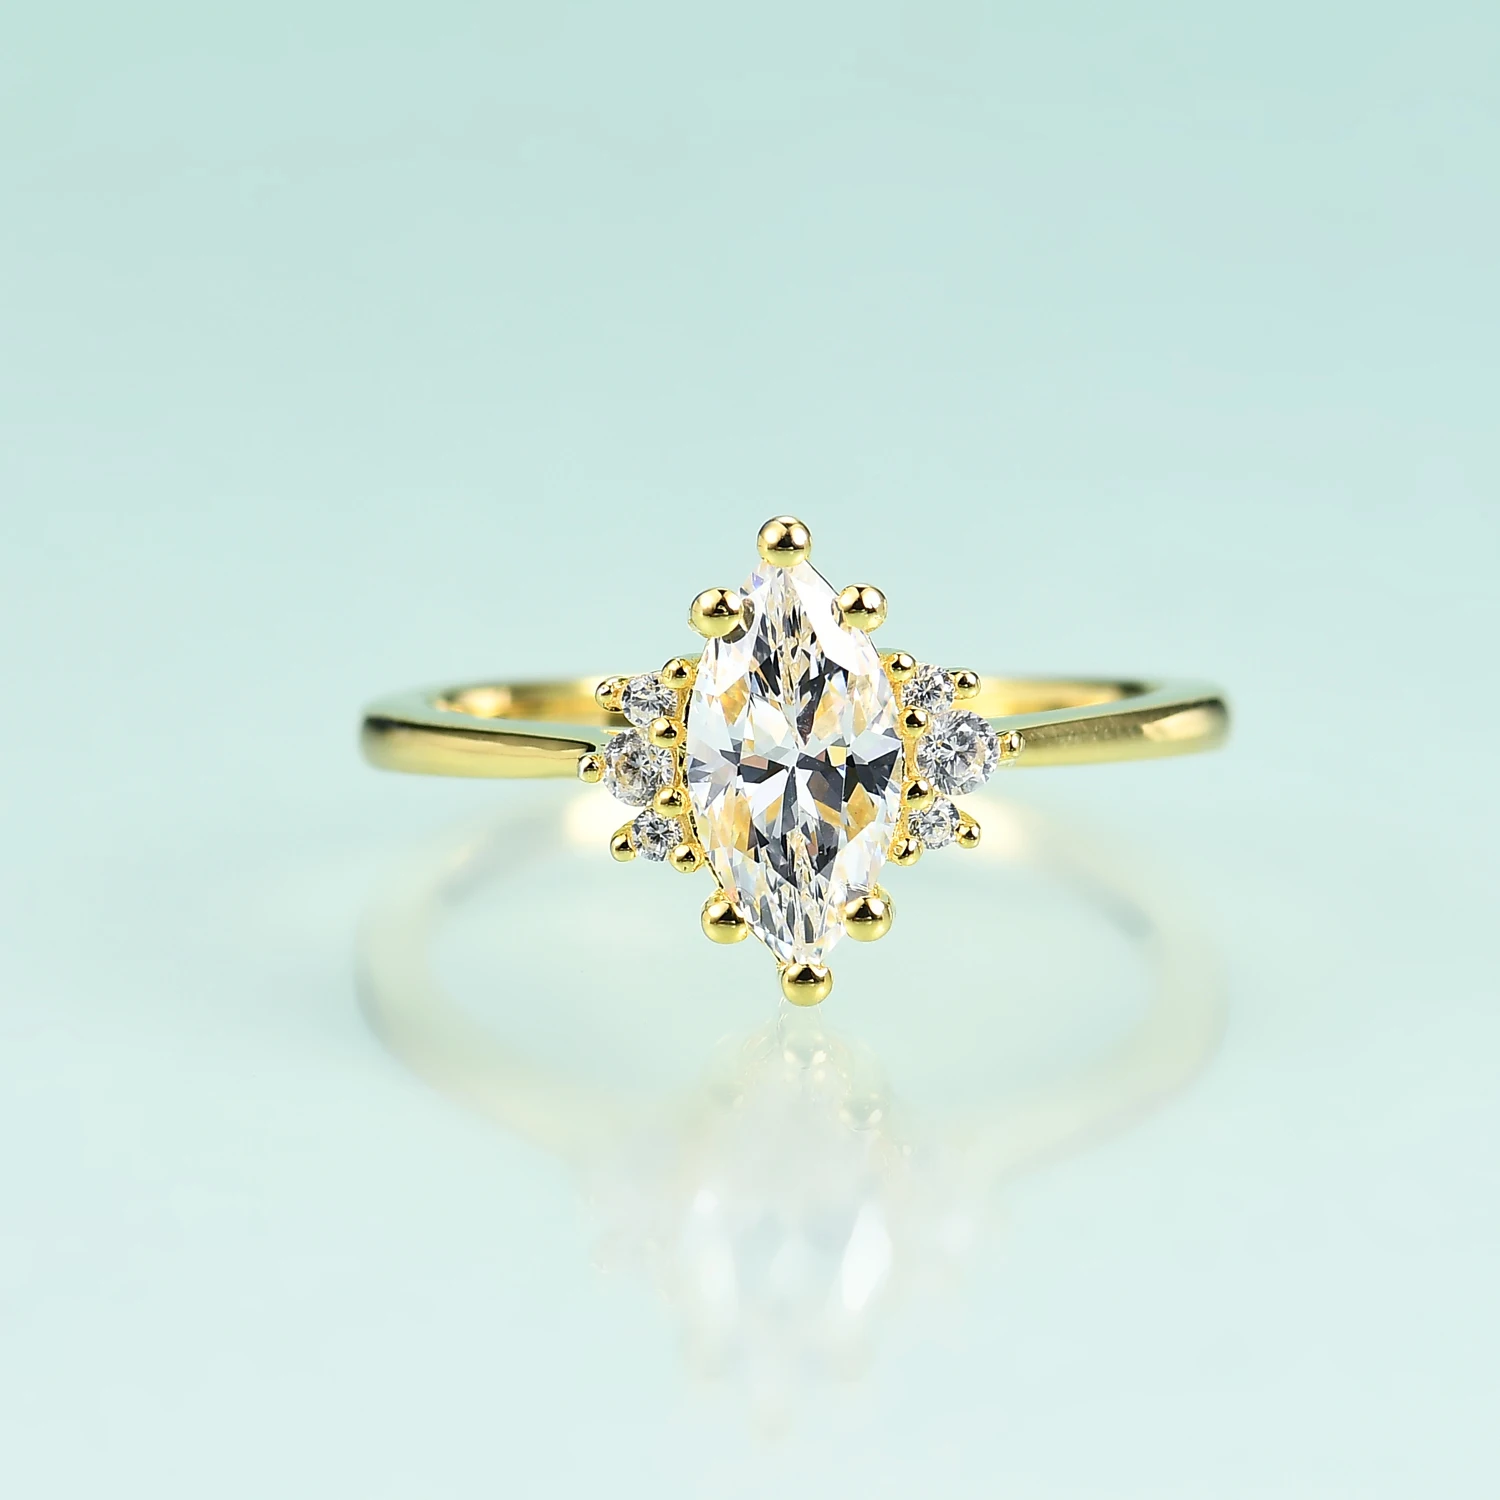 

Драгоценный камень красота 14K желтое золото для женщин кольца 925 пробы серебряные стандартные кольца помолвка обручальное кольцо